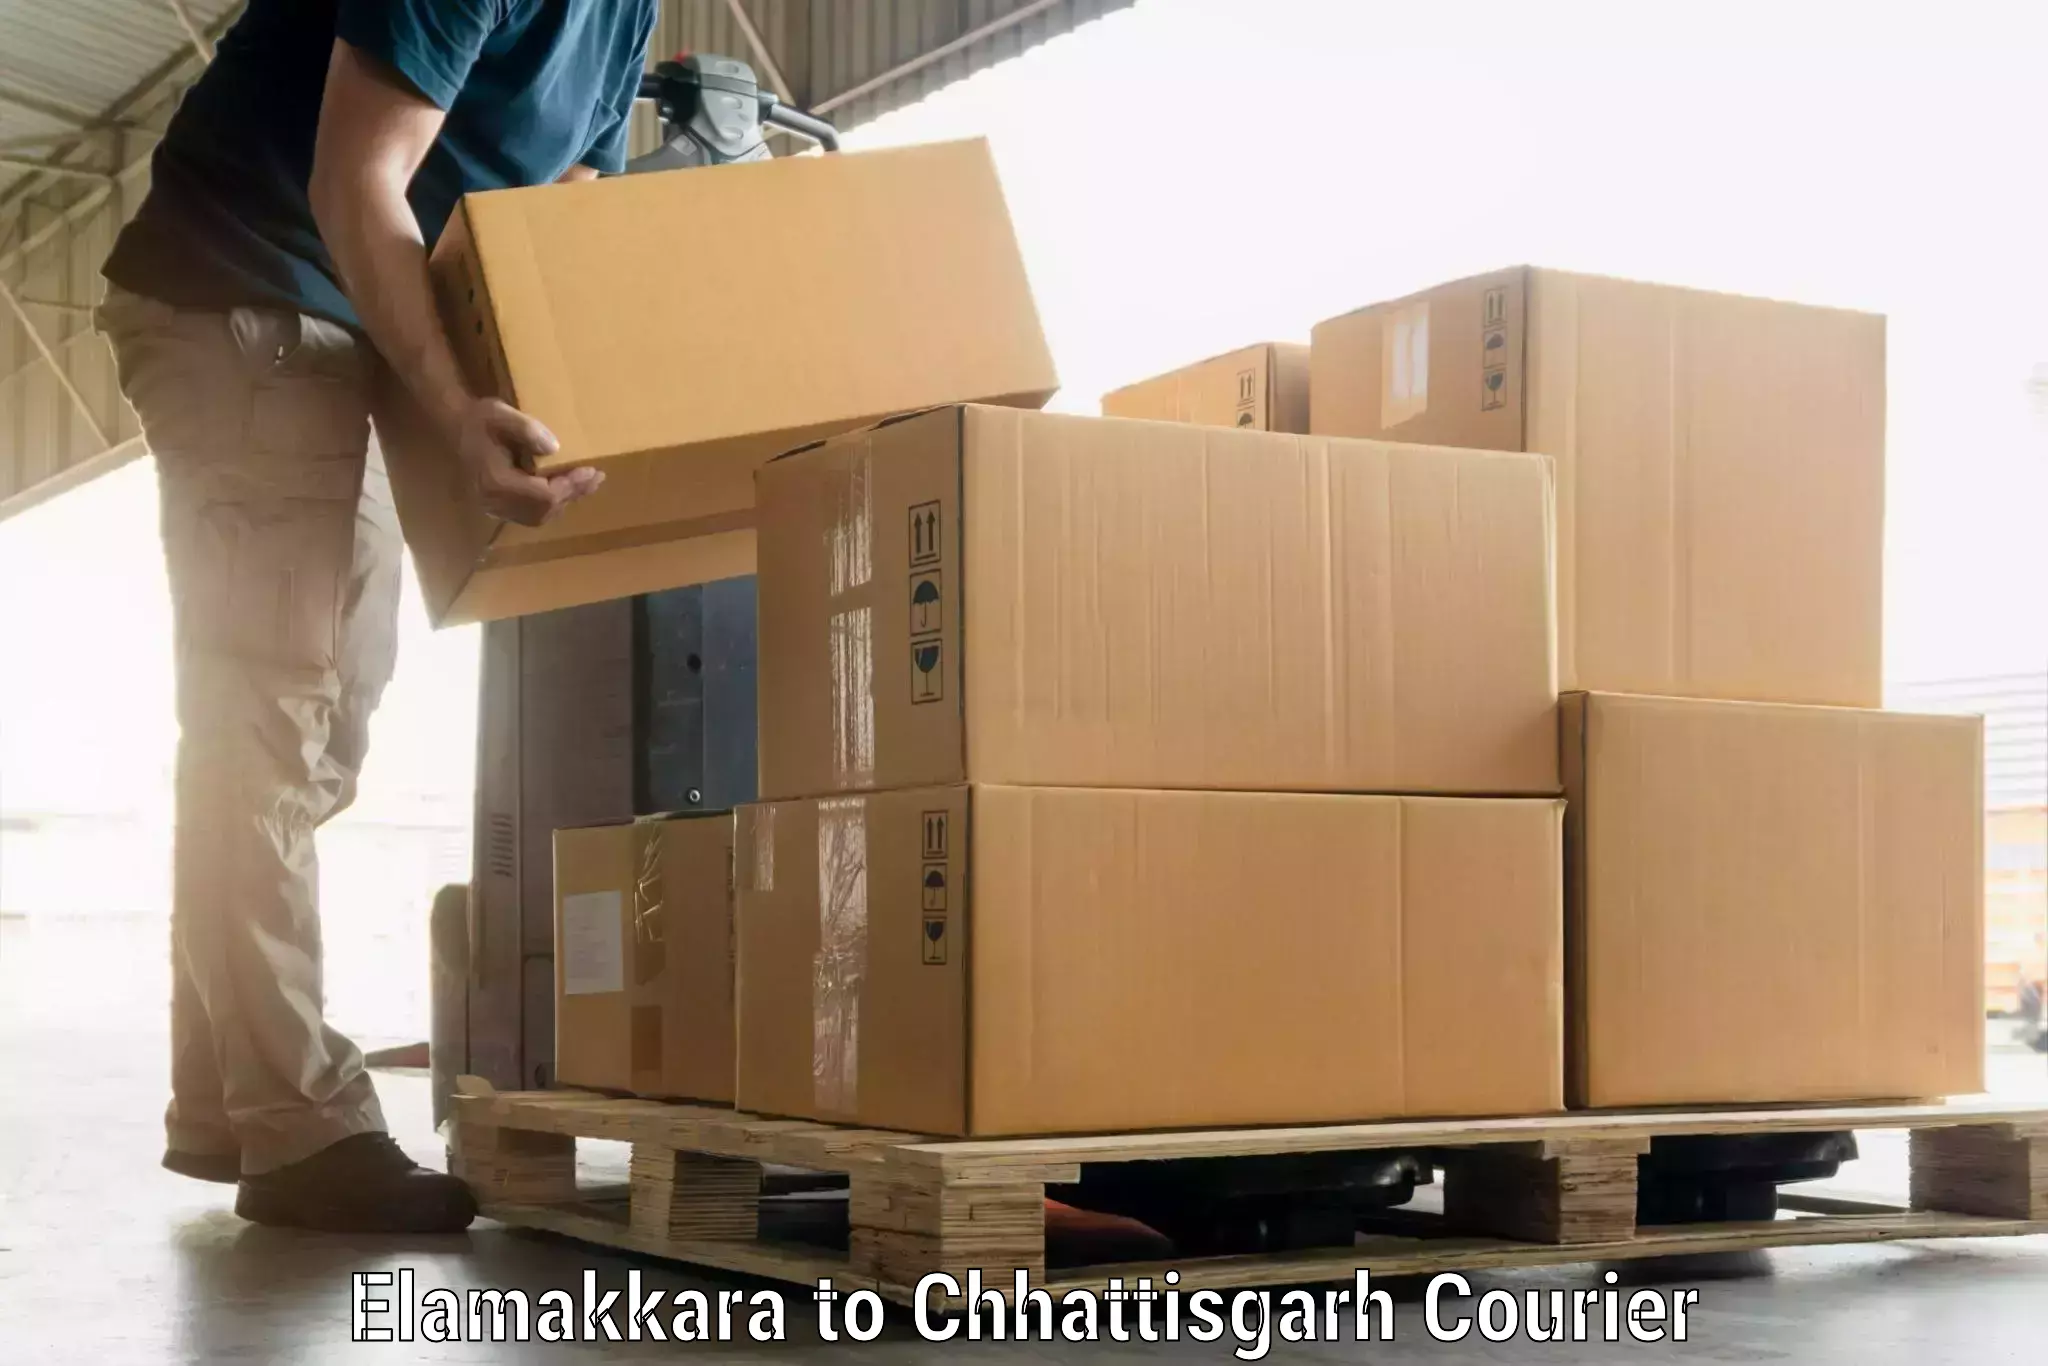 Baggage transport network Elamakkara to Pakhanjur